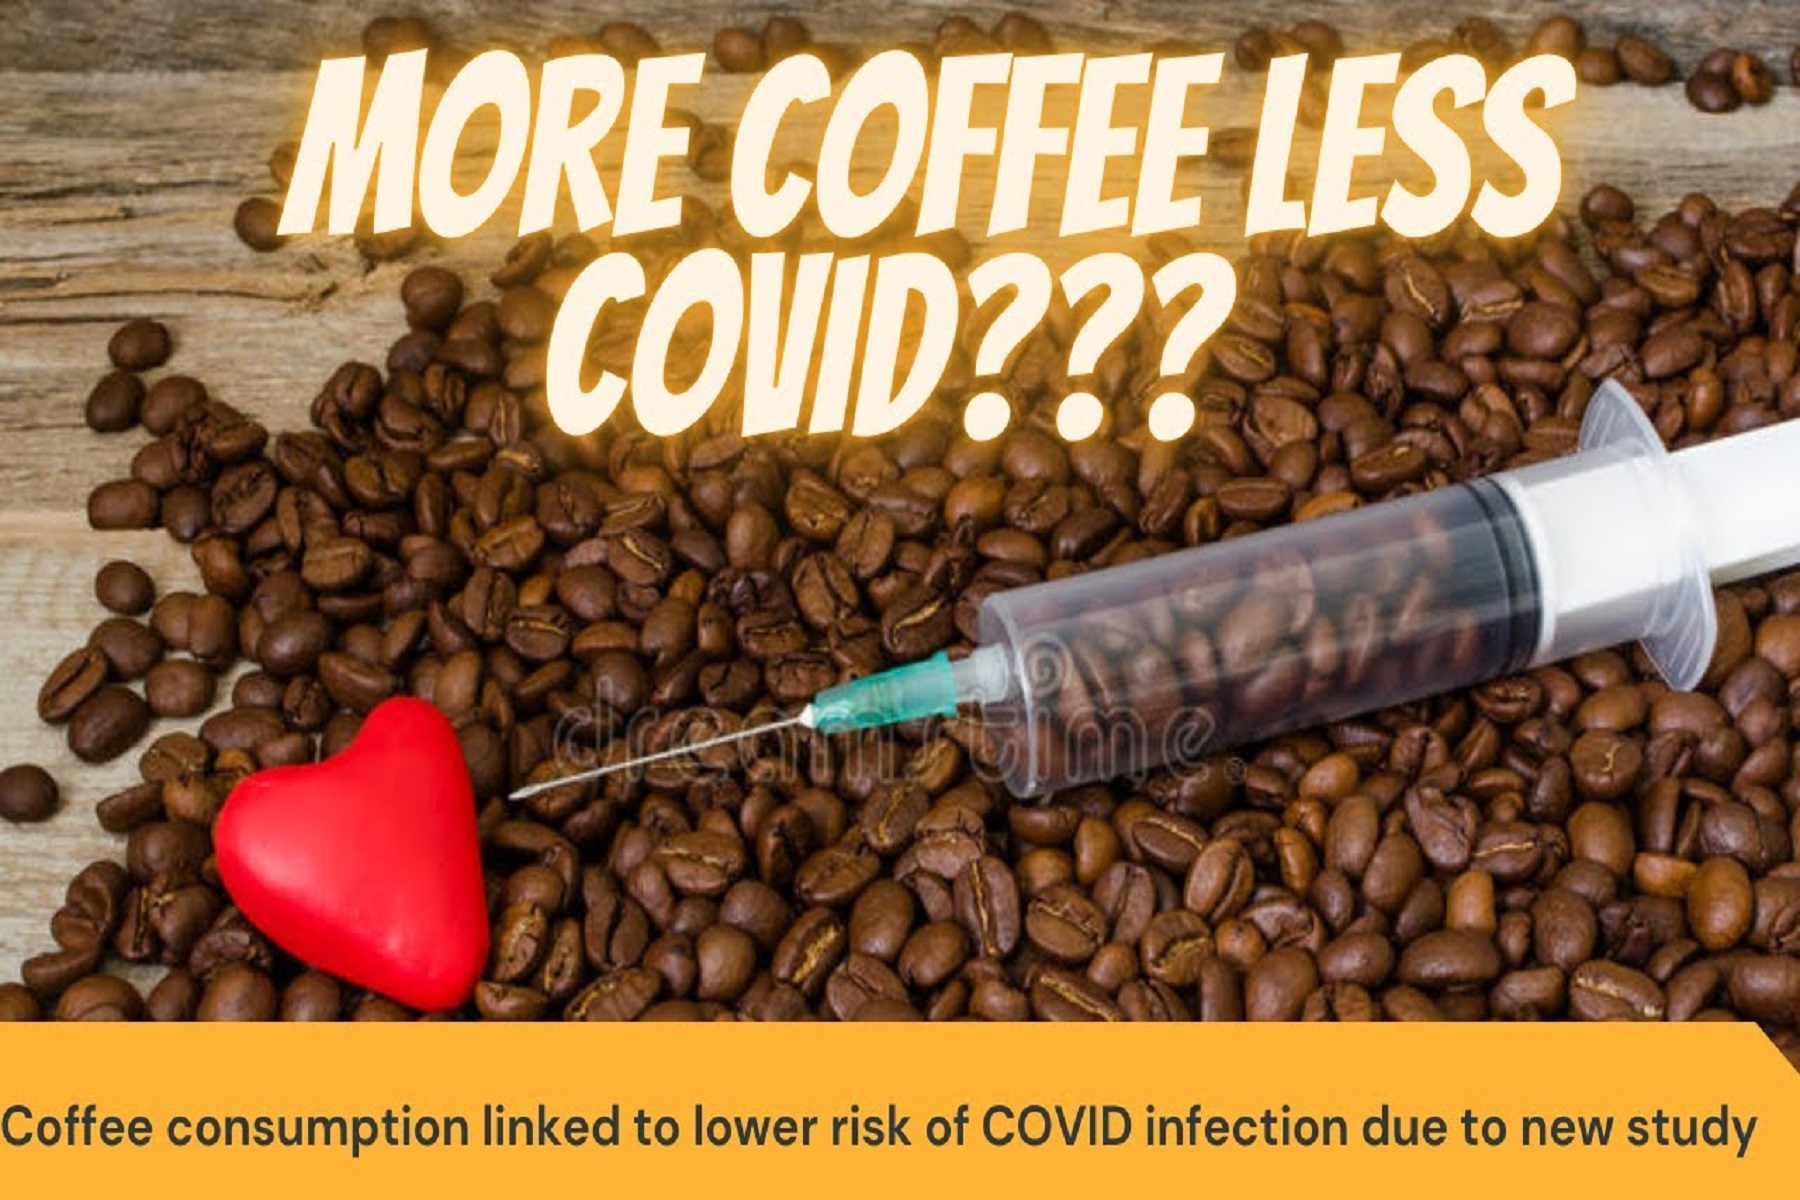 Πανεπιστήμιο Northwestern: Η κατανάλωση καφέ συνδέεται με χαμηλότερο κίνδυνο μόλυνσης COVID-19